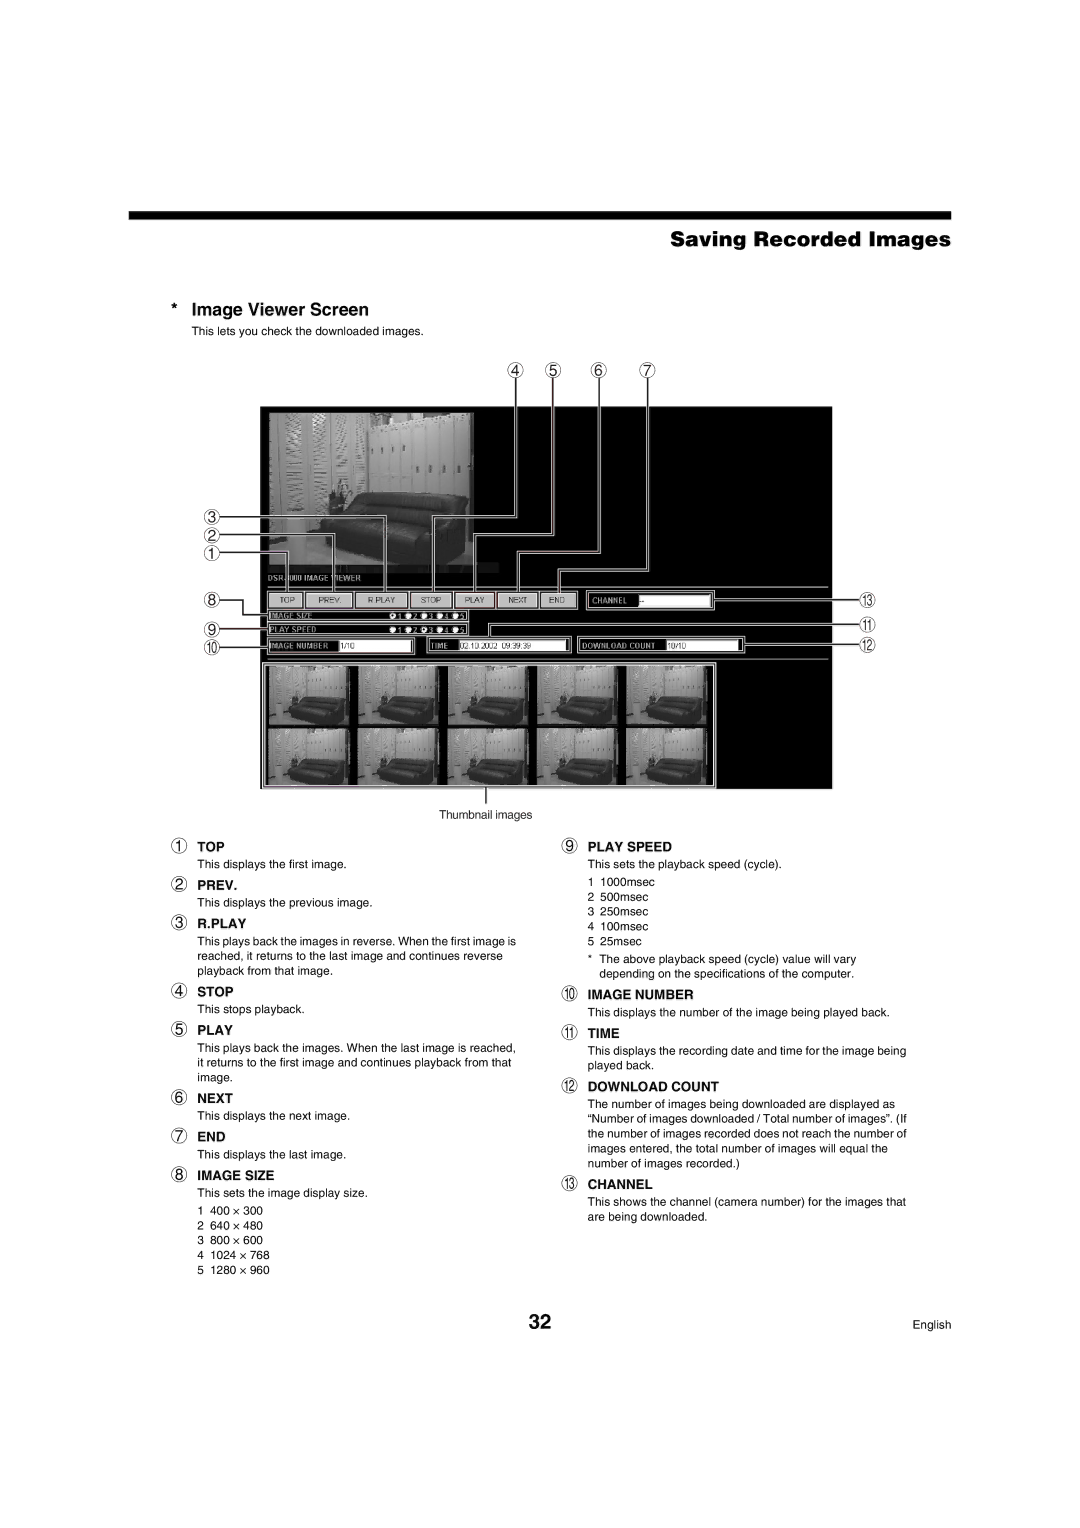 Sanyo DSR-3009 manual Image Viewer Screen 